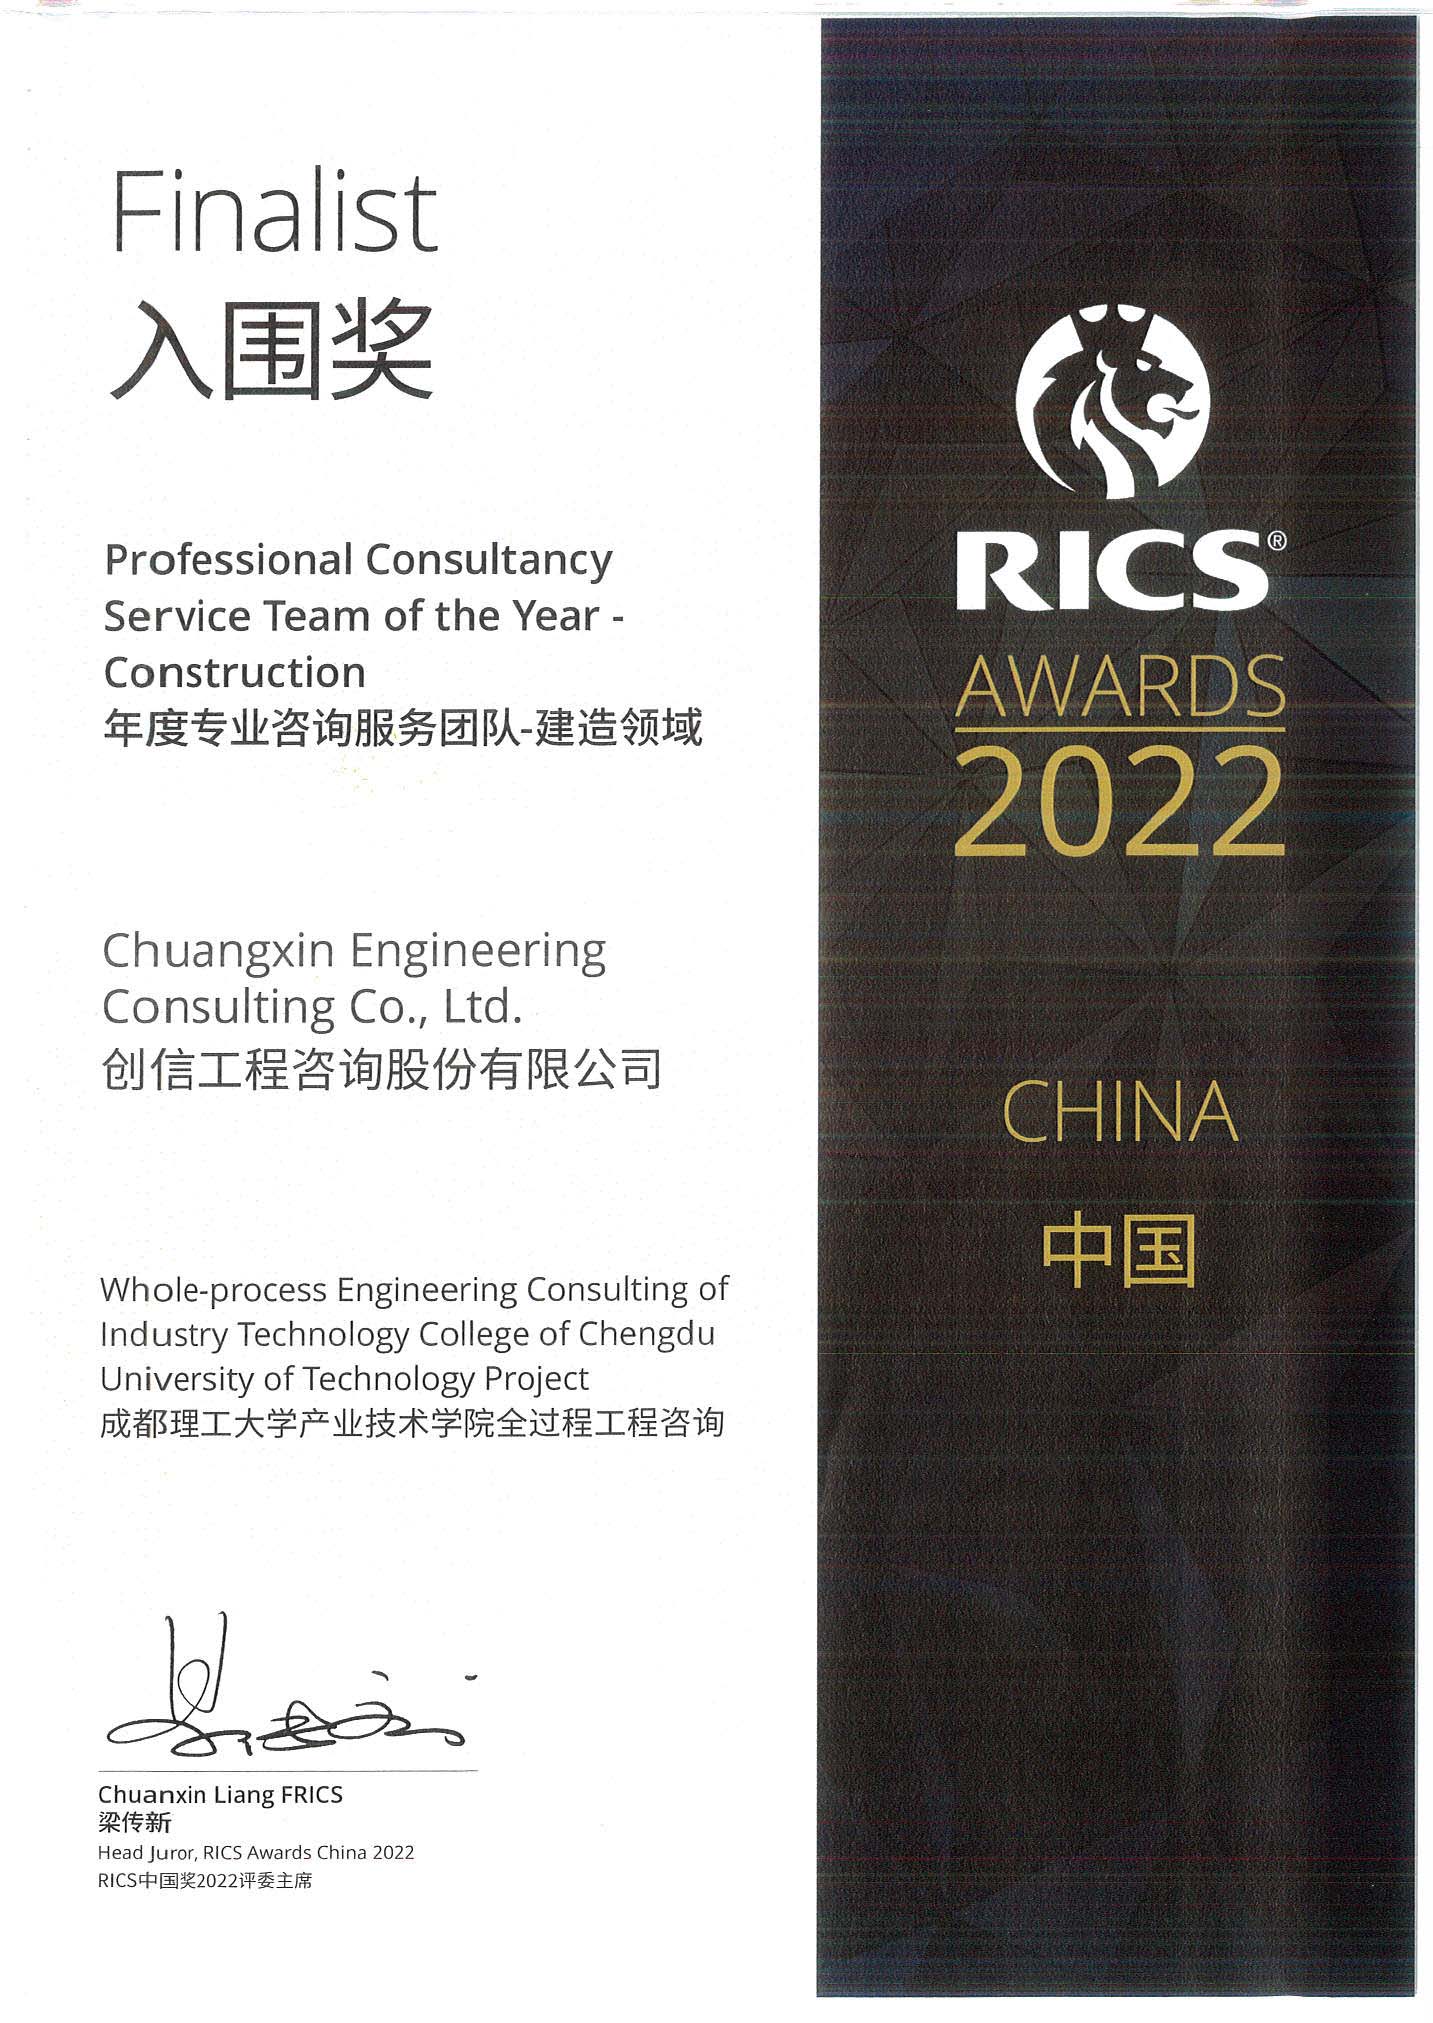 RICS入围奖-成都理工大学产业技术学院全过程工程咨询